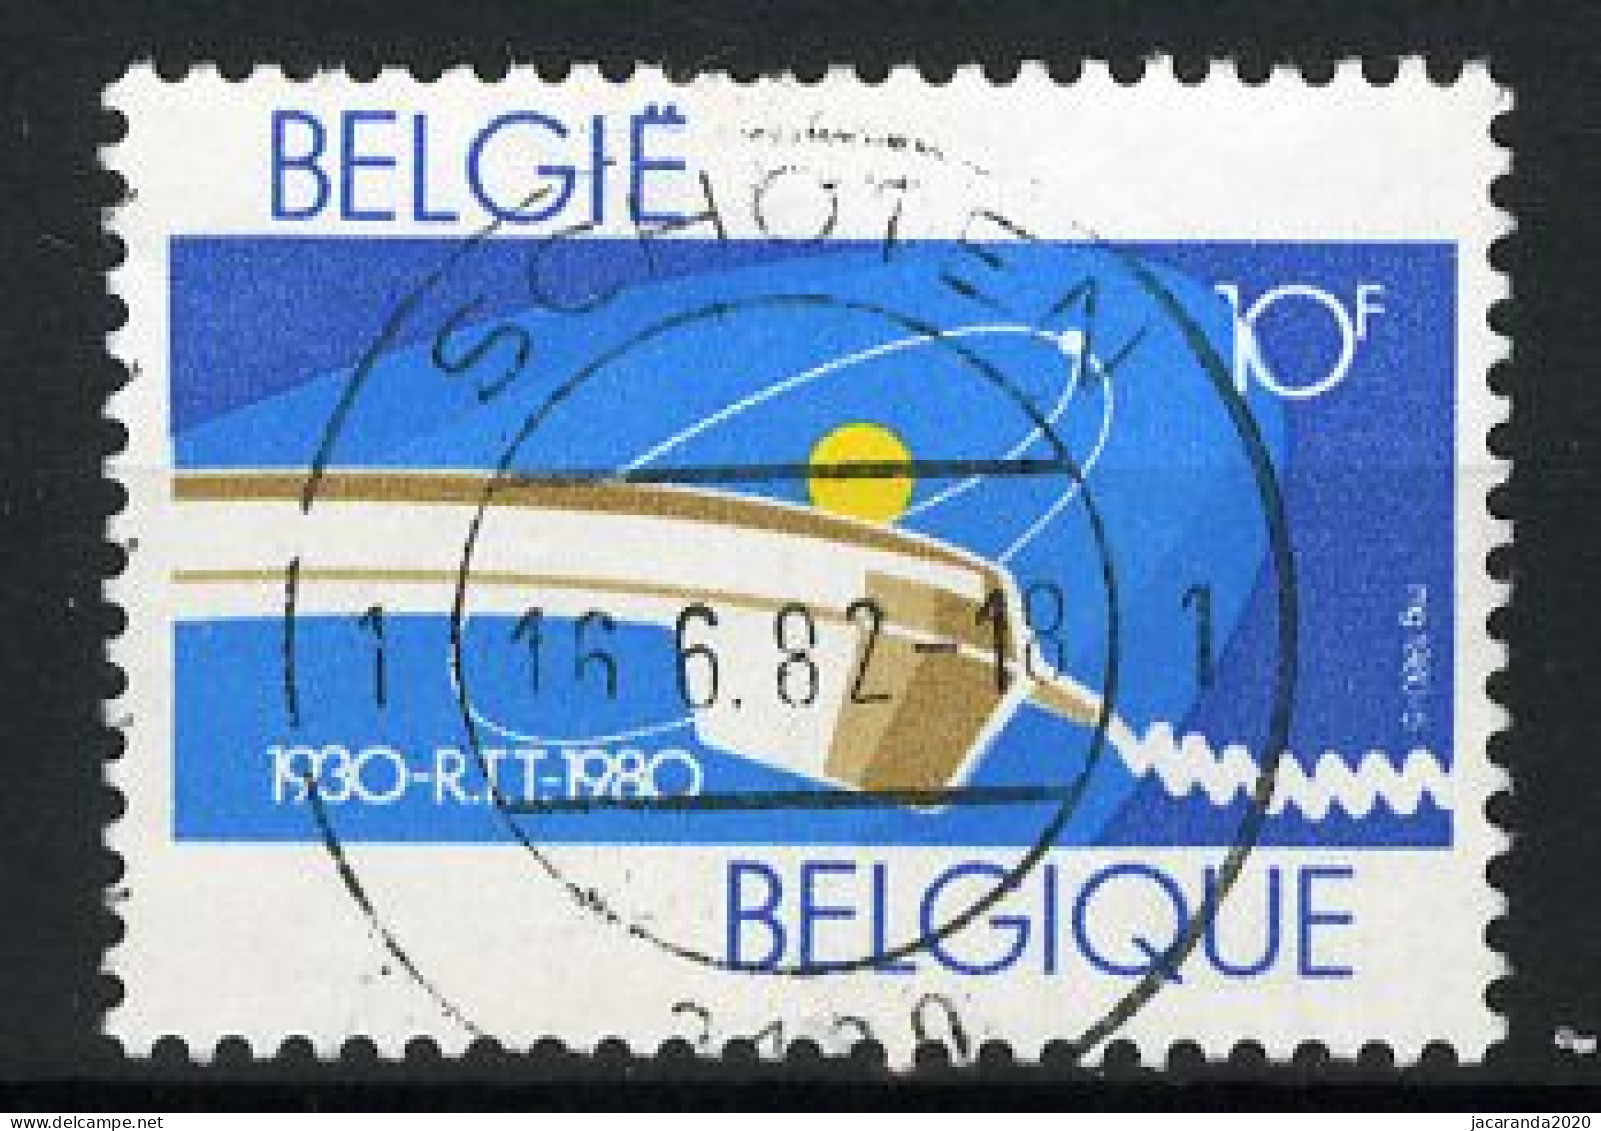 België 1969 - 50 Jaar R.T.T. - Gestempeld - Oblitéré -used - Used Stamps